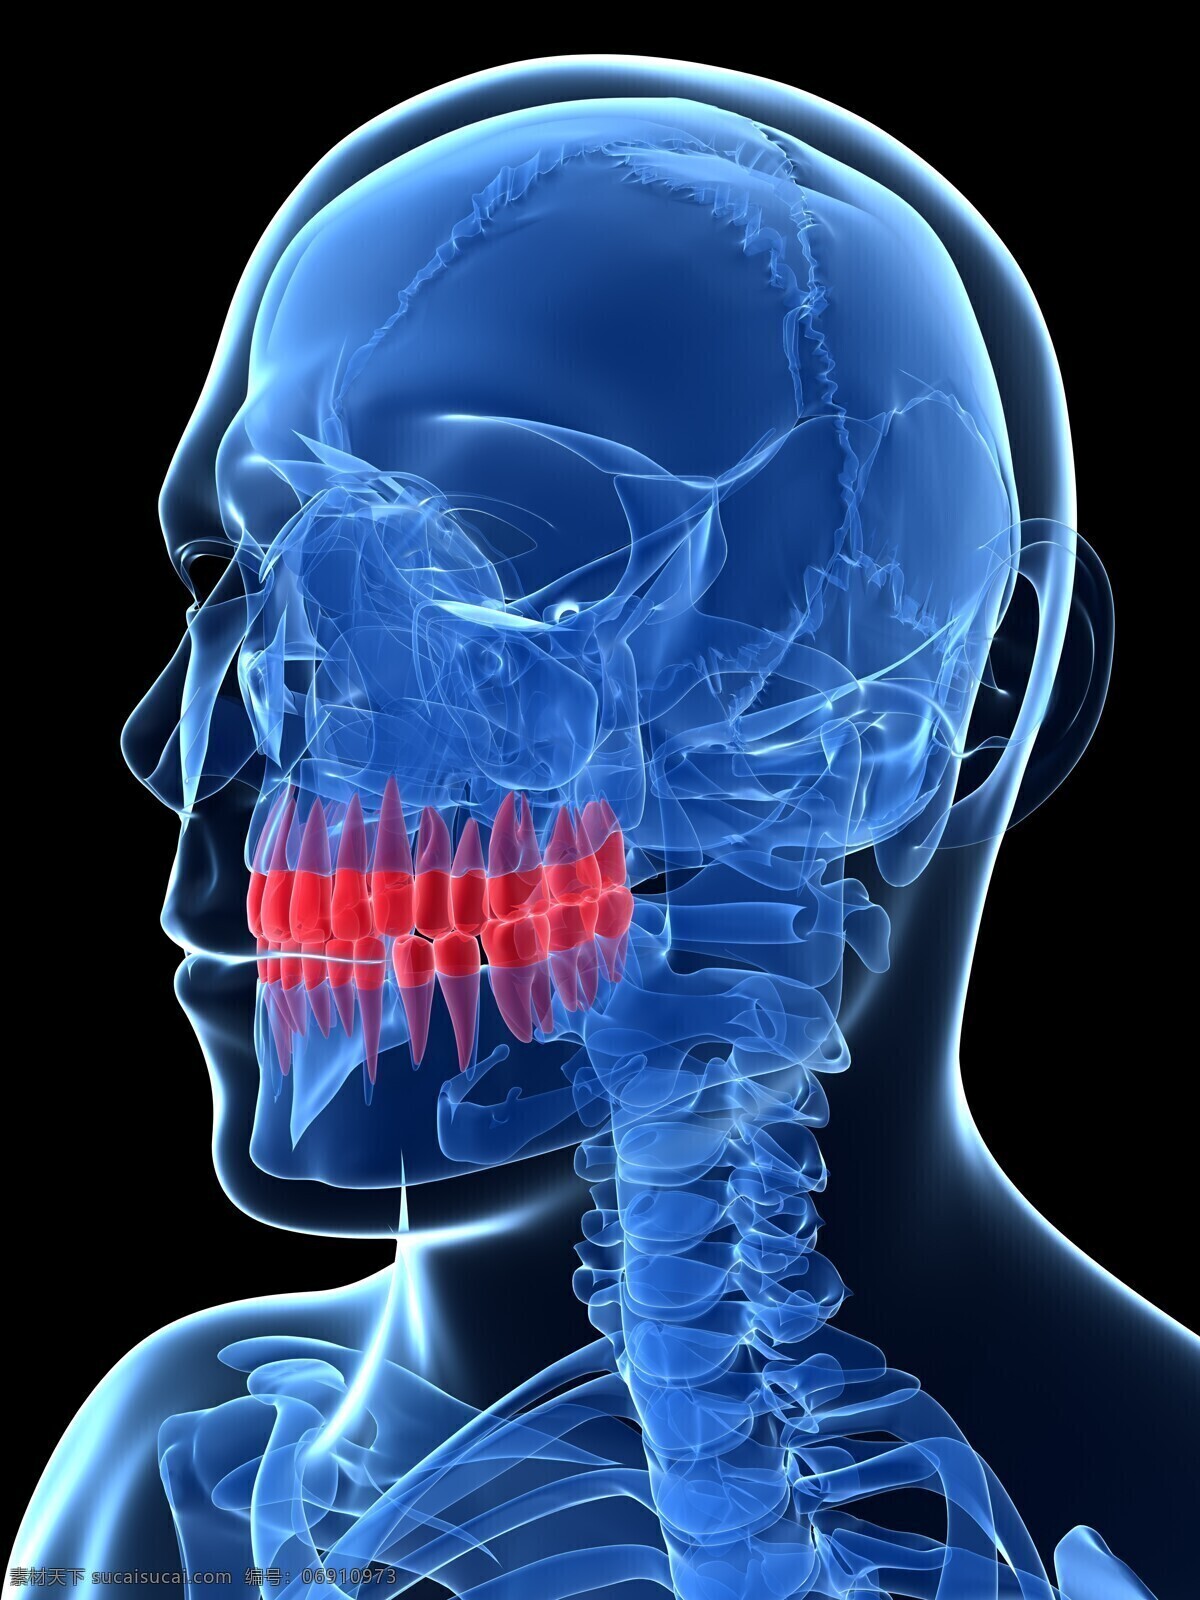 牙齿 人体器官 口腔 人体 人体组织 人体结构 医学 医疗 科学 医疗护理 现代科技